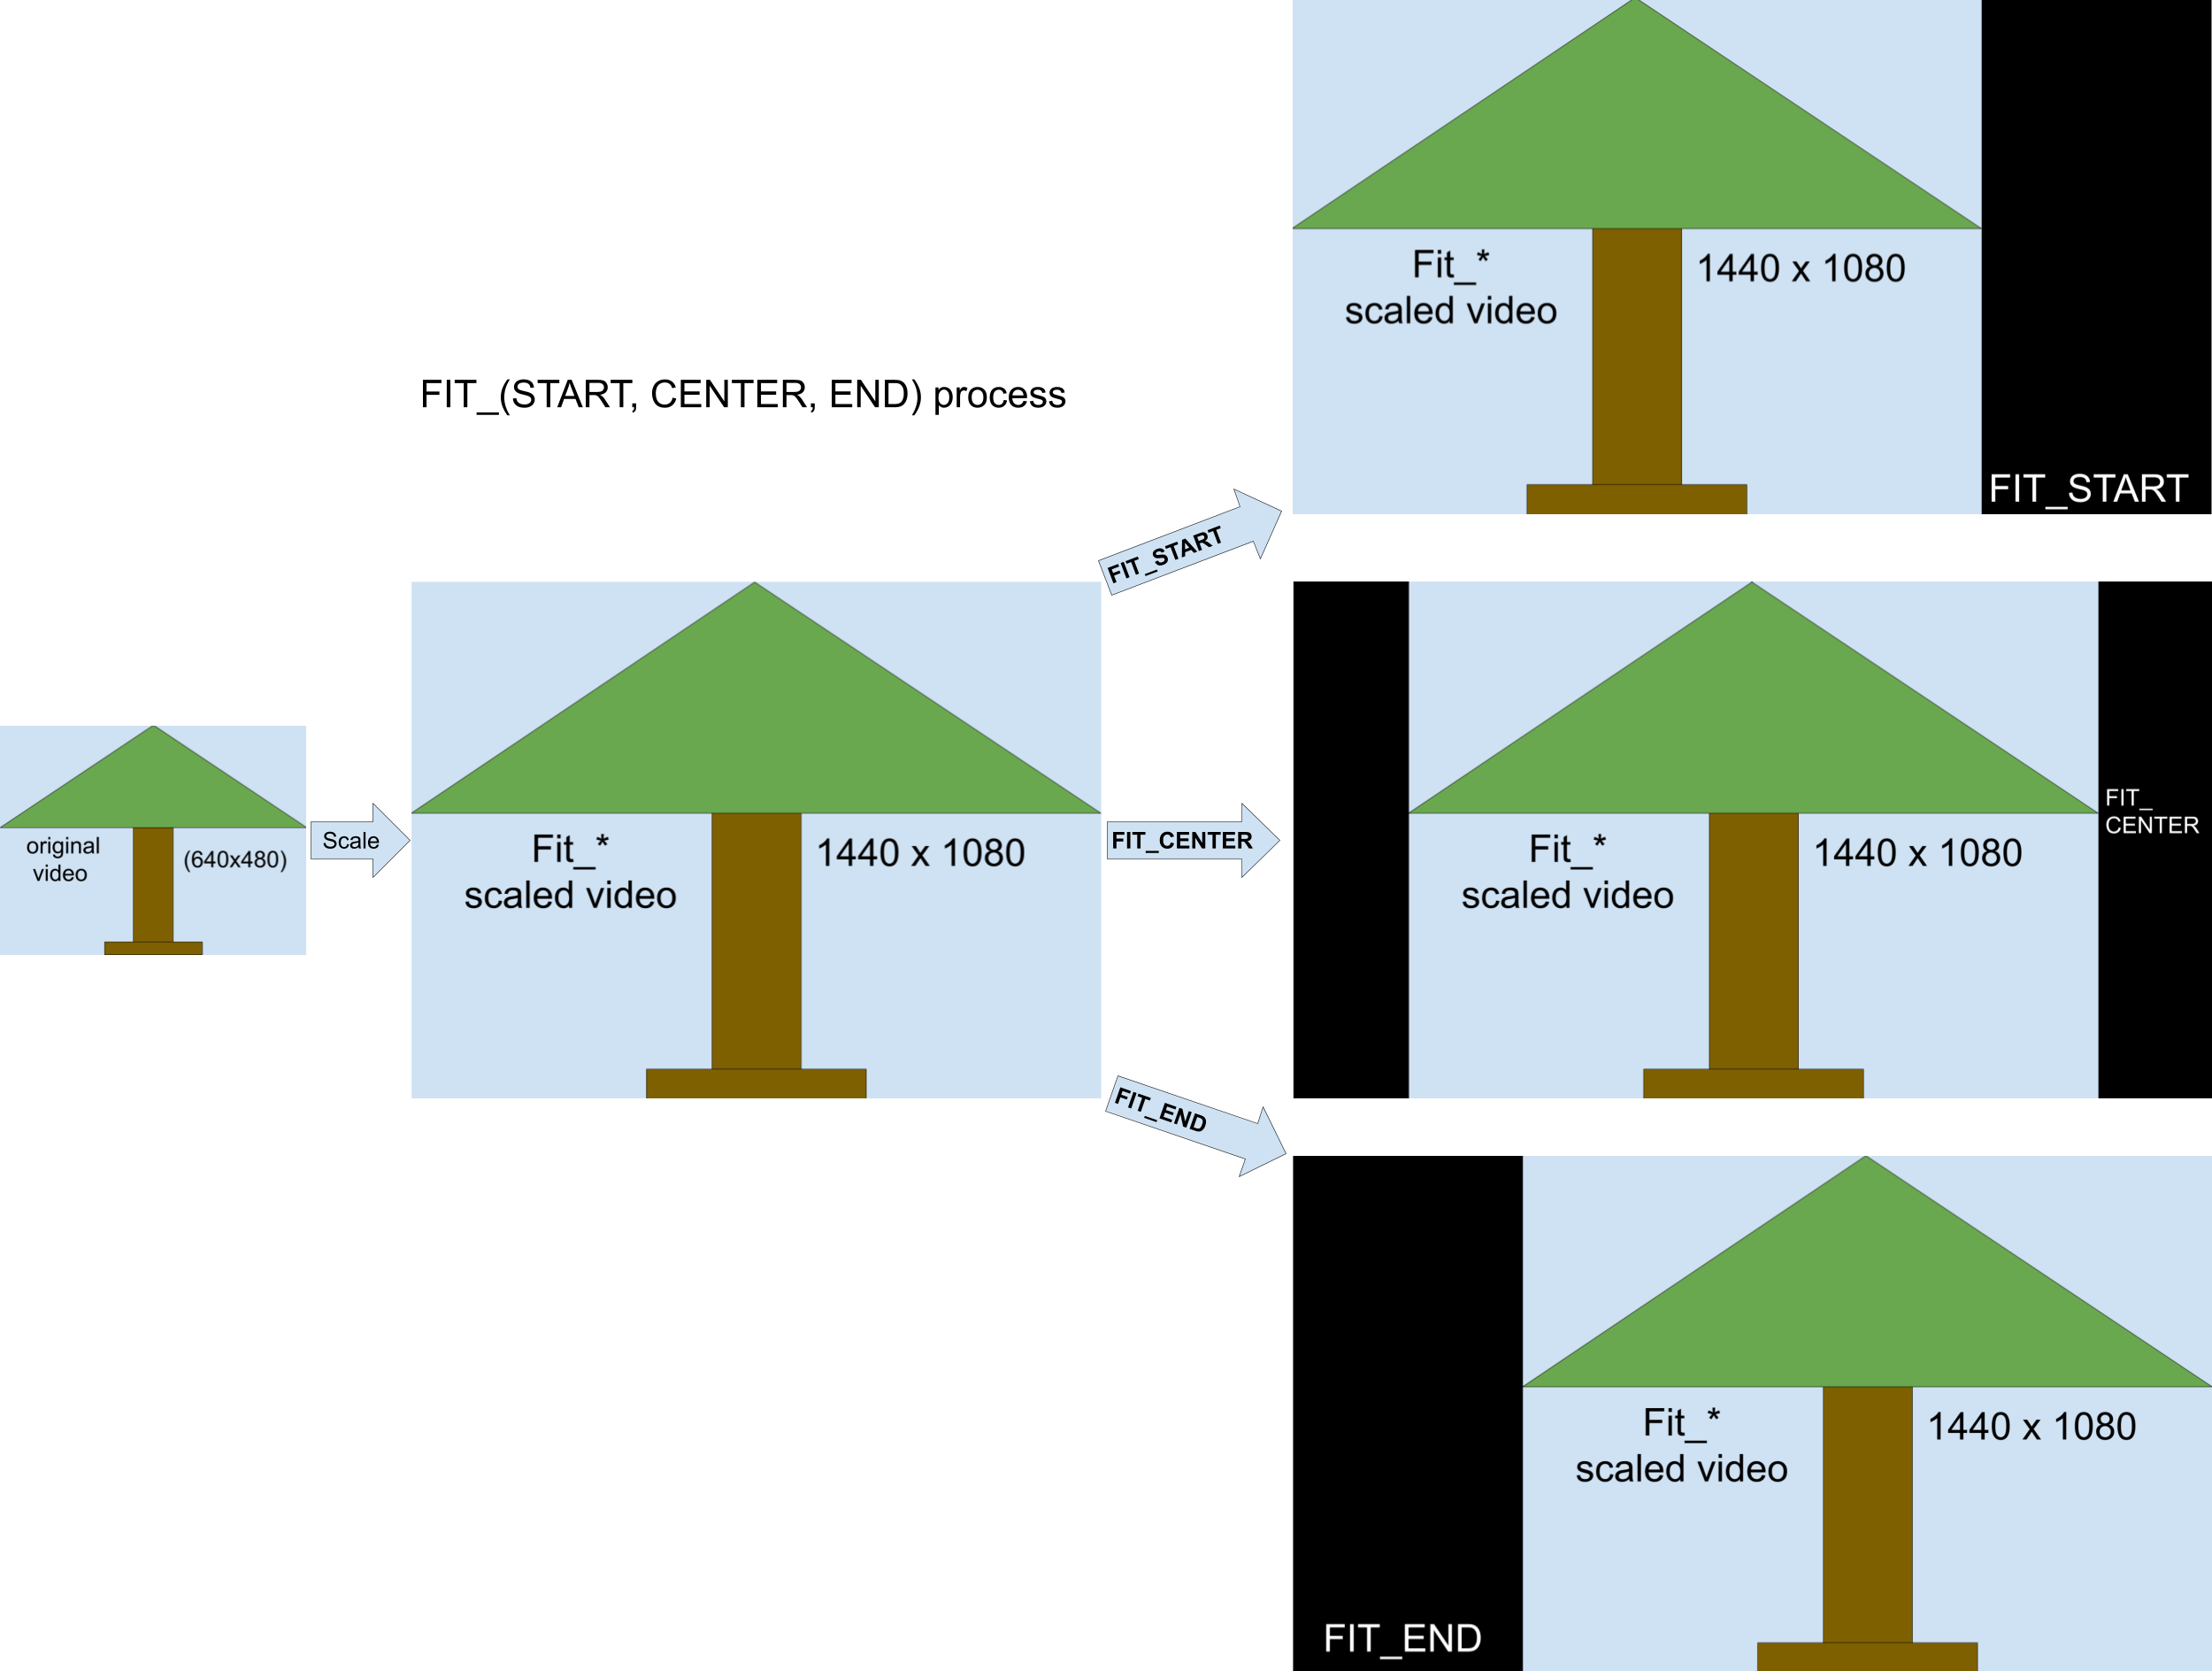 Immagine che mostra il processo di scalabilità FIT_START, FIT_CENTER e FIT_END